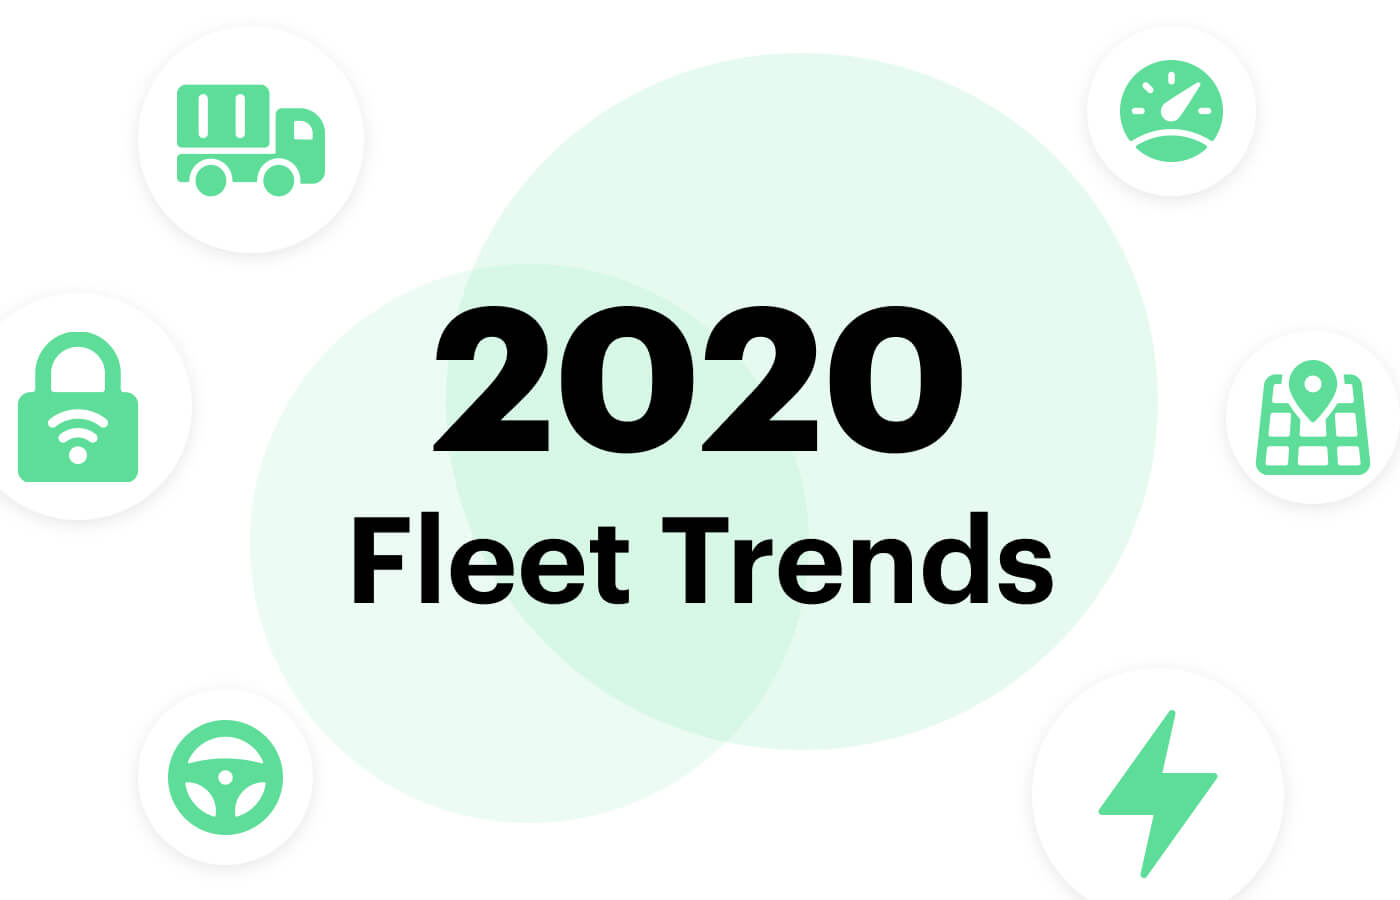 Fleet trends 2020